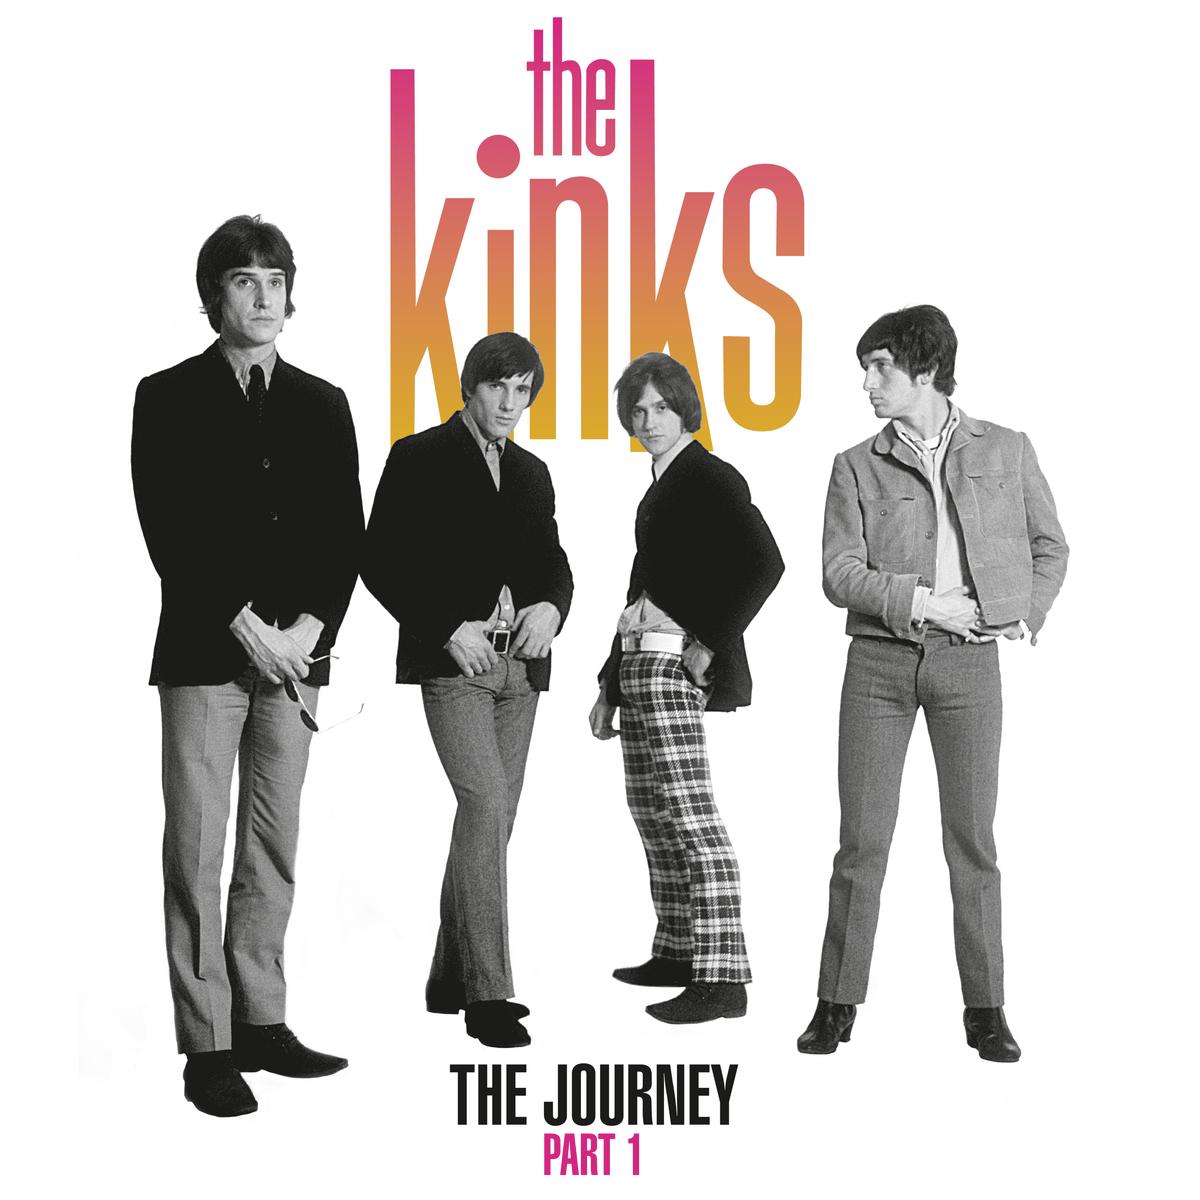 Kinks - The journey part 1 (Rem) - 2 x LP